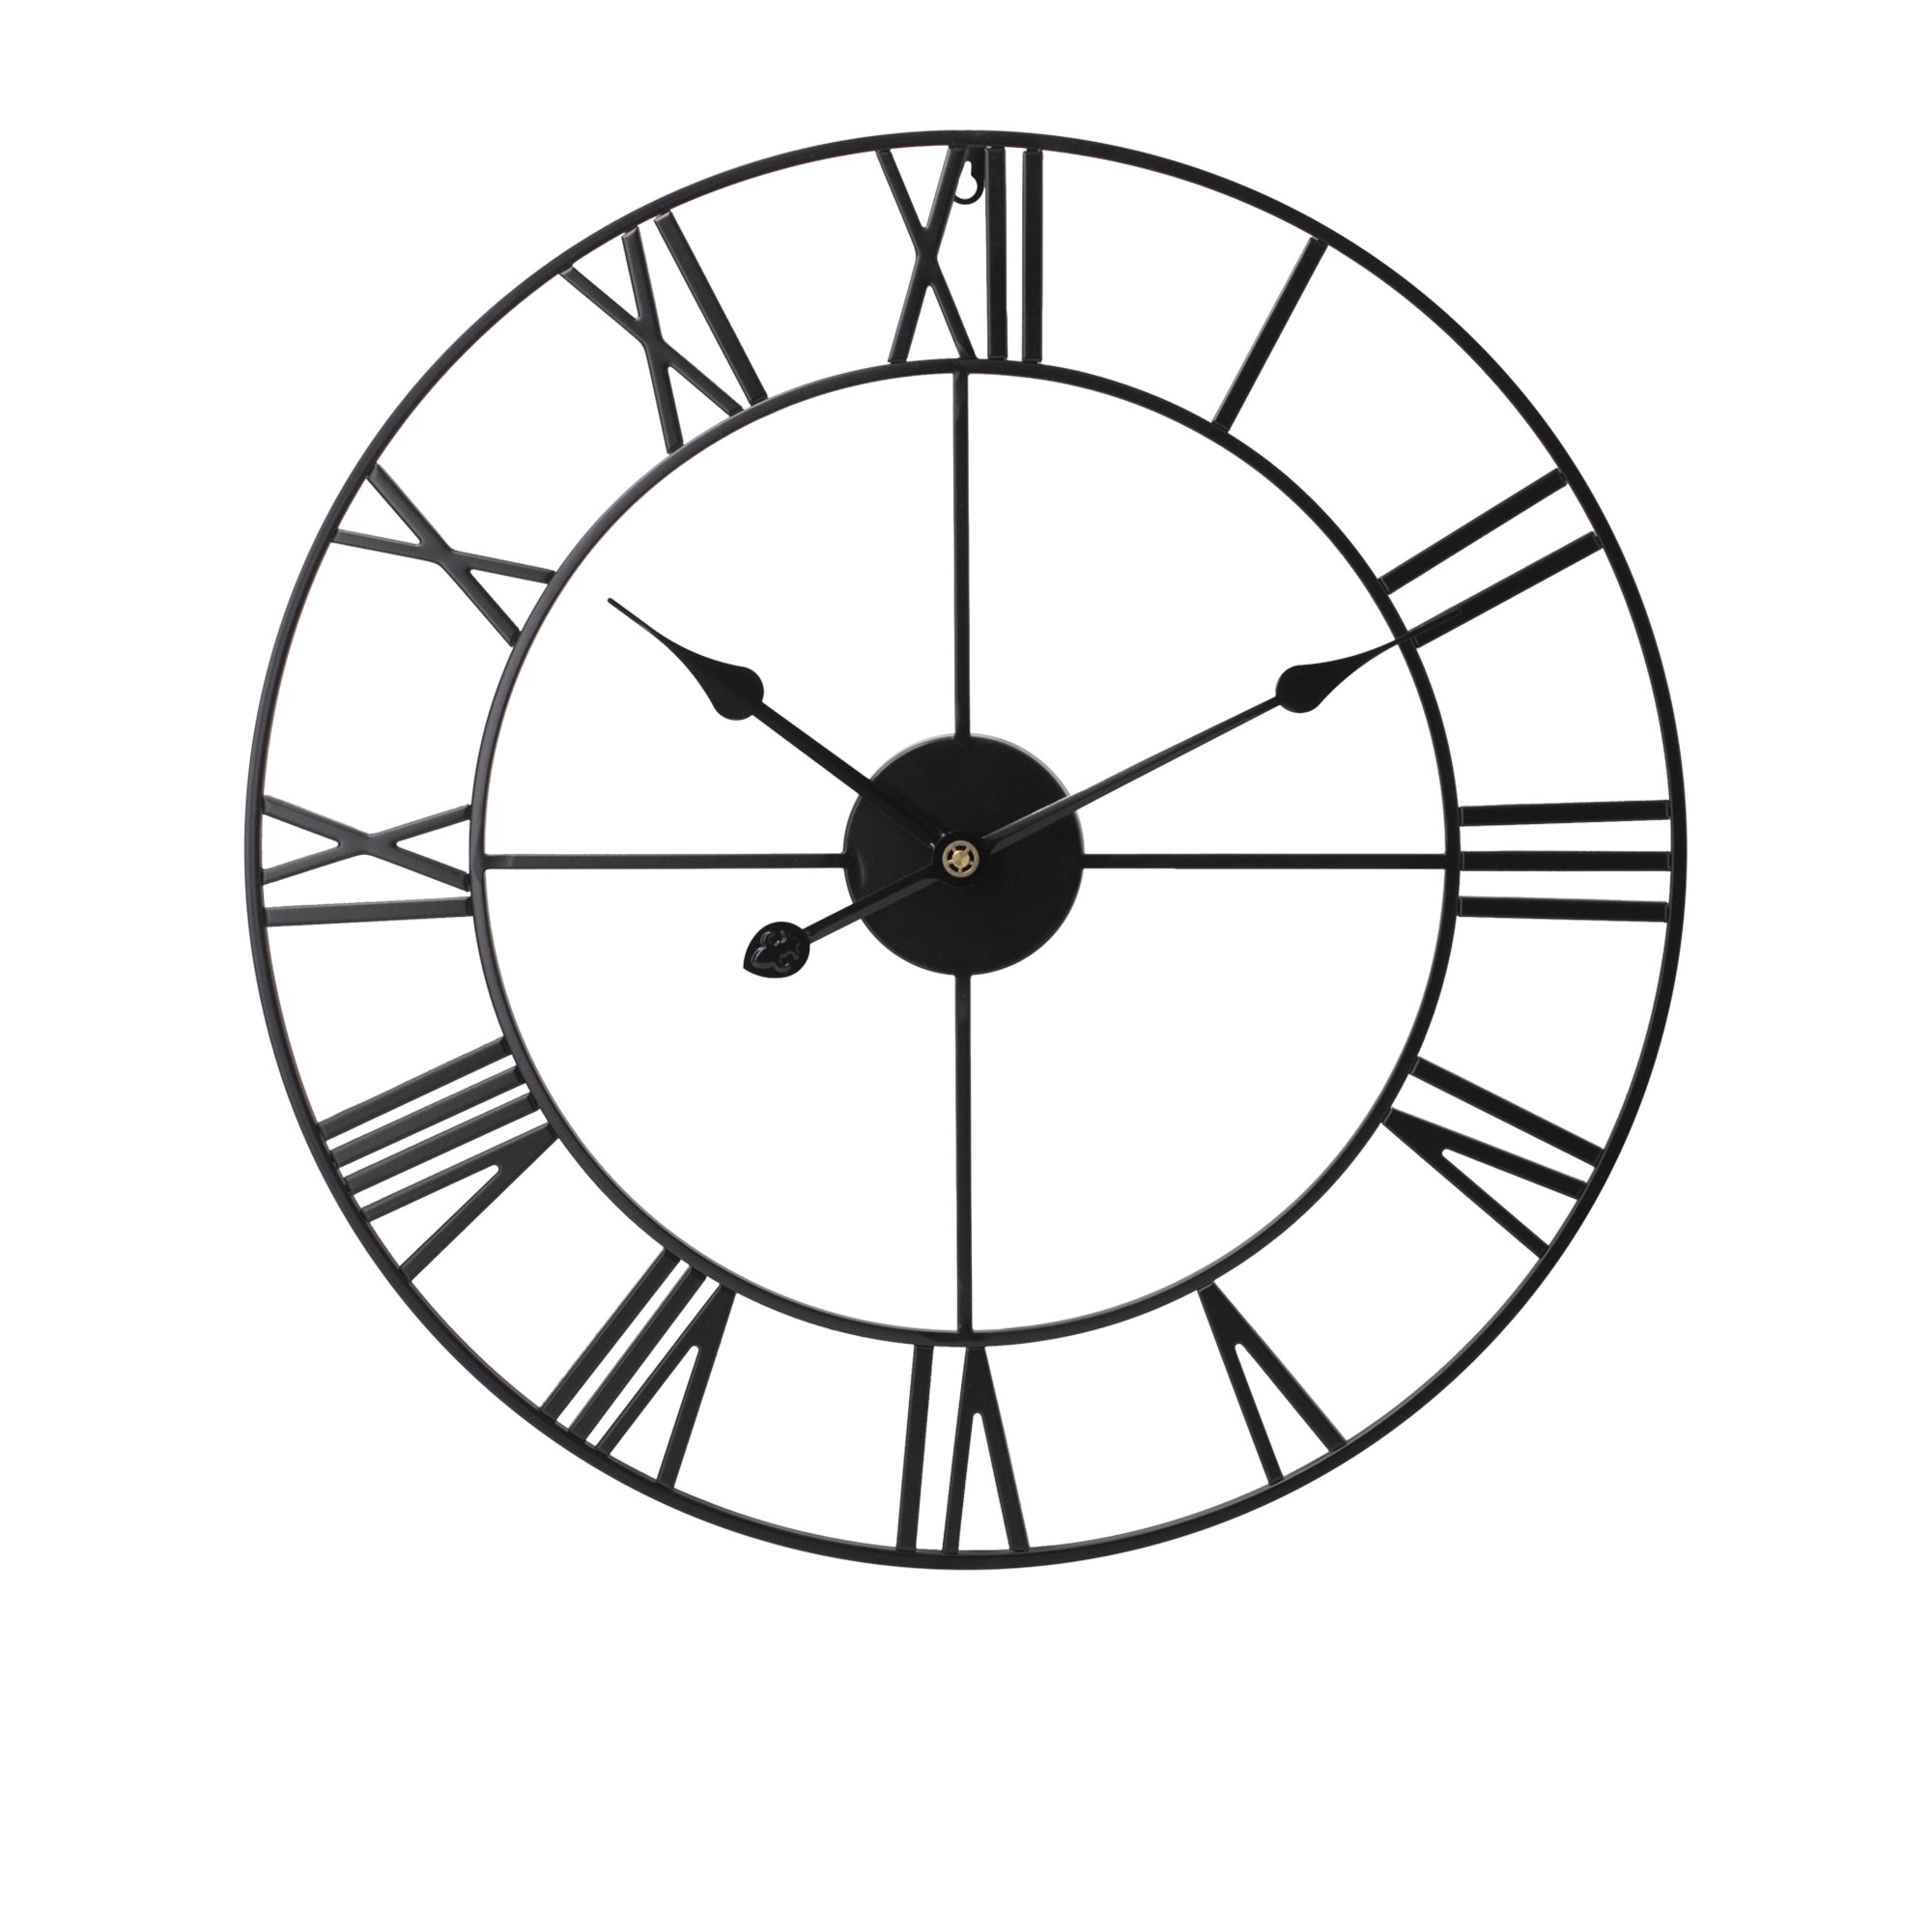 Toki Karl Wall Clock 60cm Black Image 1